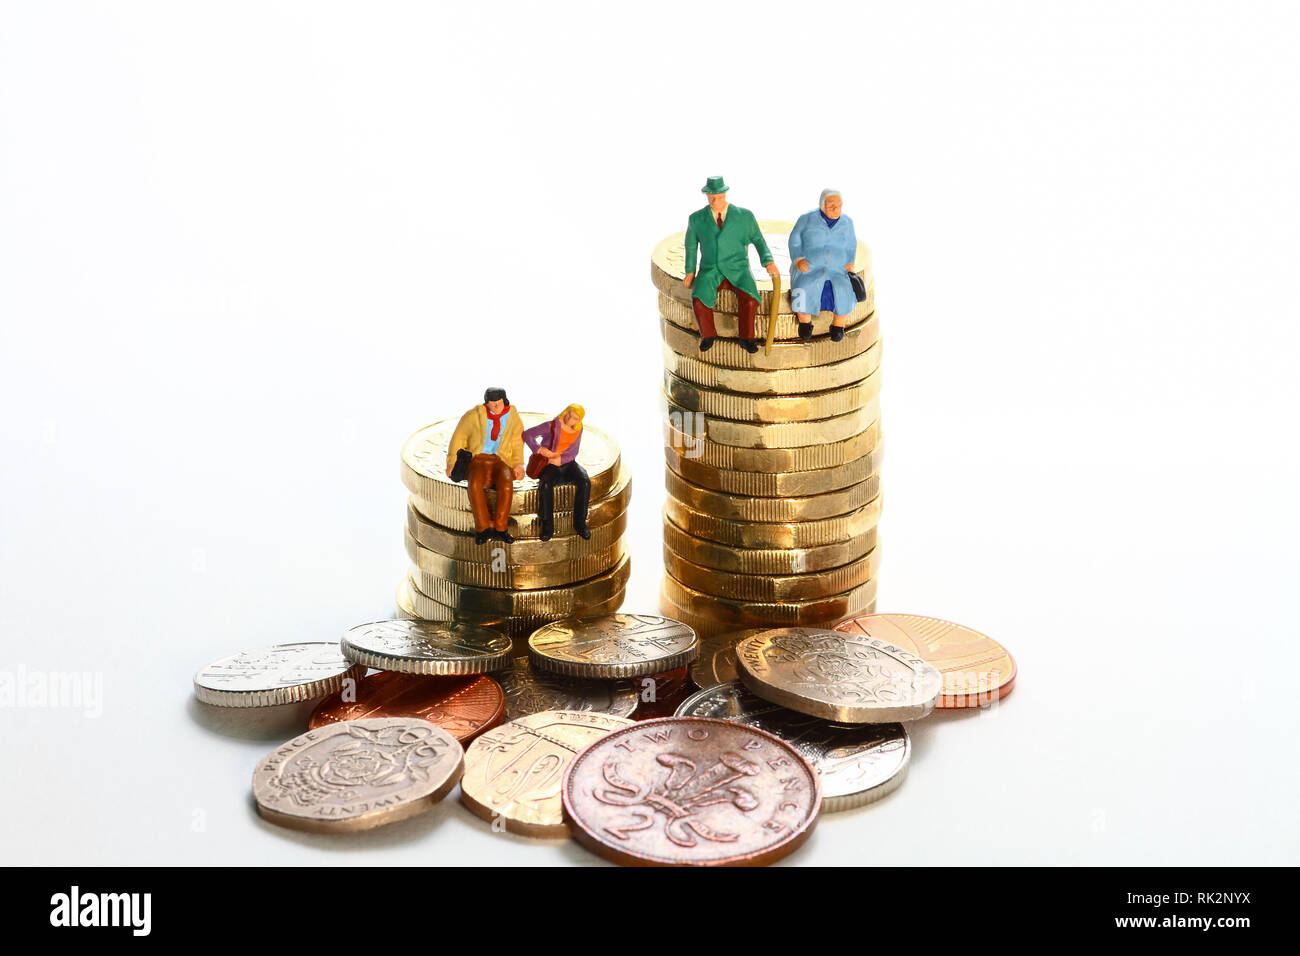 Diorama concettuale immagine di una figura in miniatura pensionati coppia e. la giovane coppia sedette su una pila di monete da sterline Foto Stock